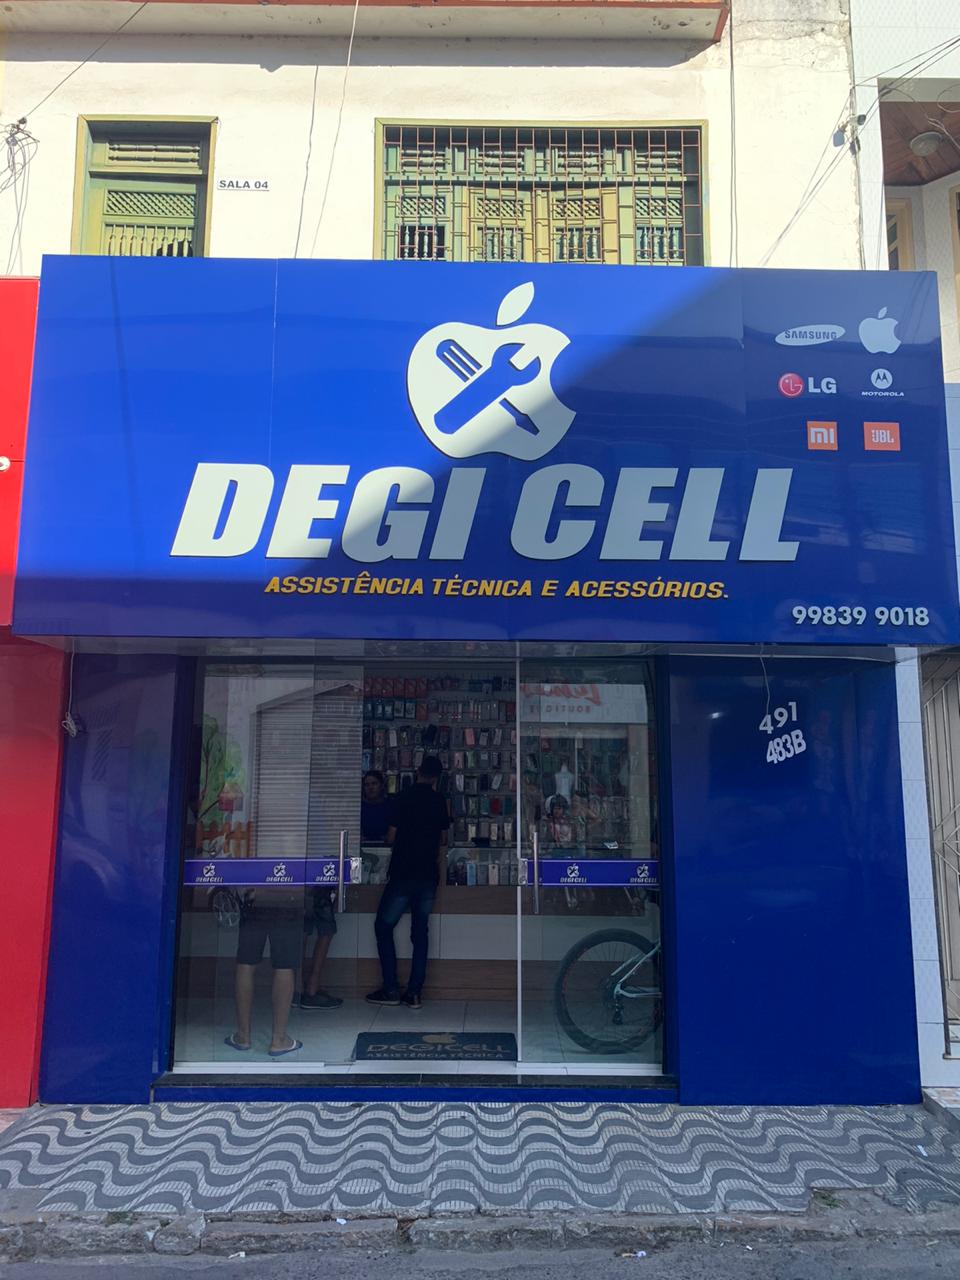 Degi Cell